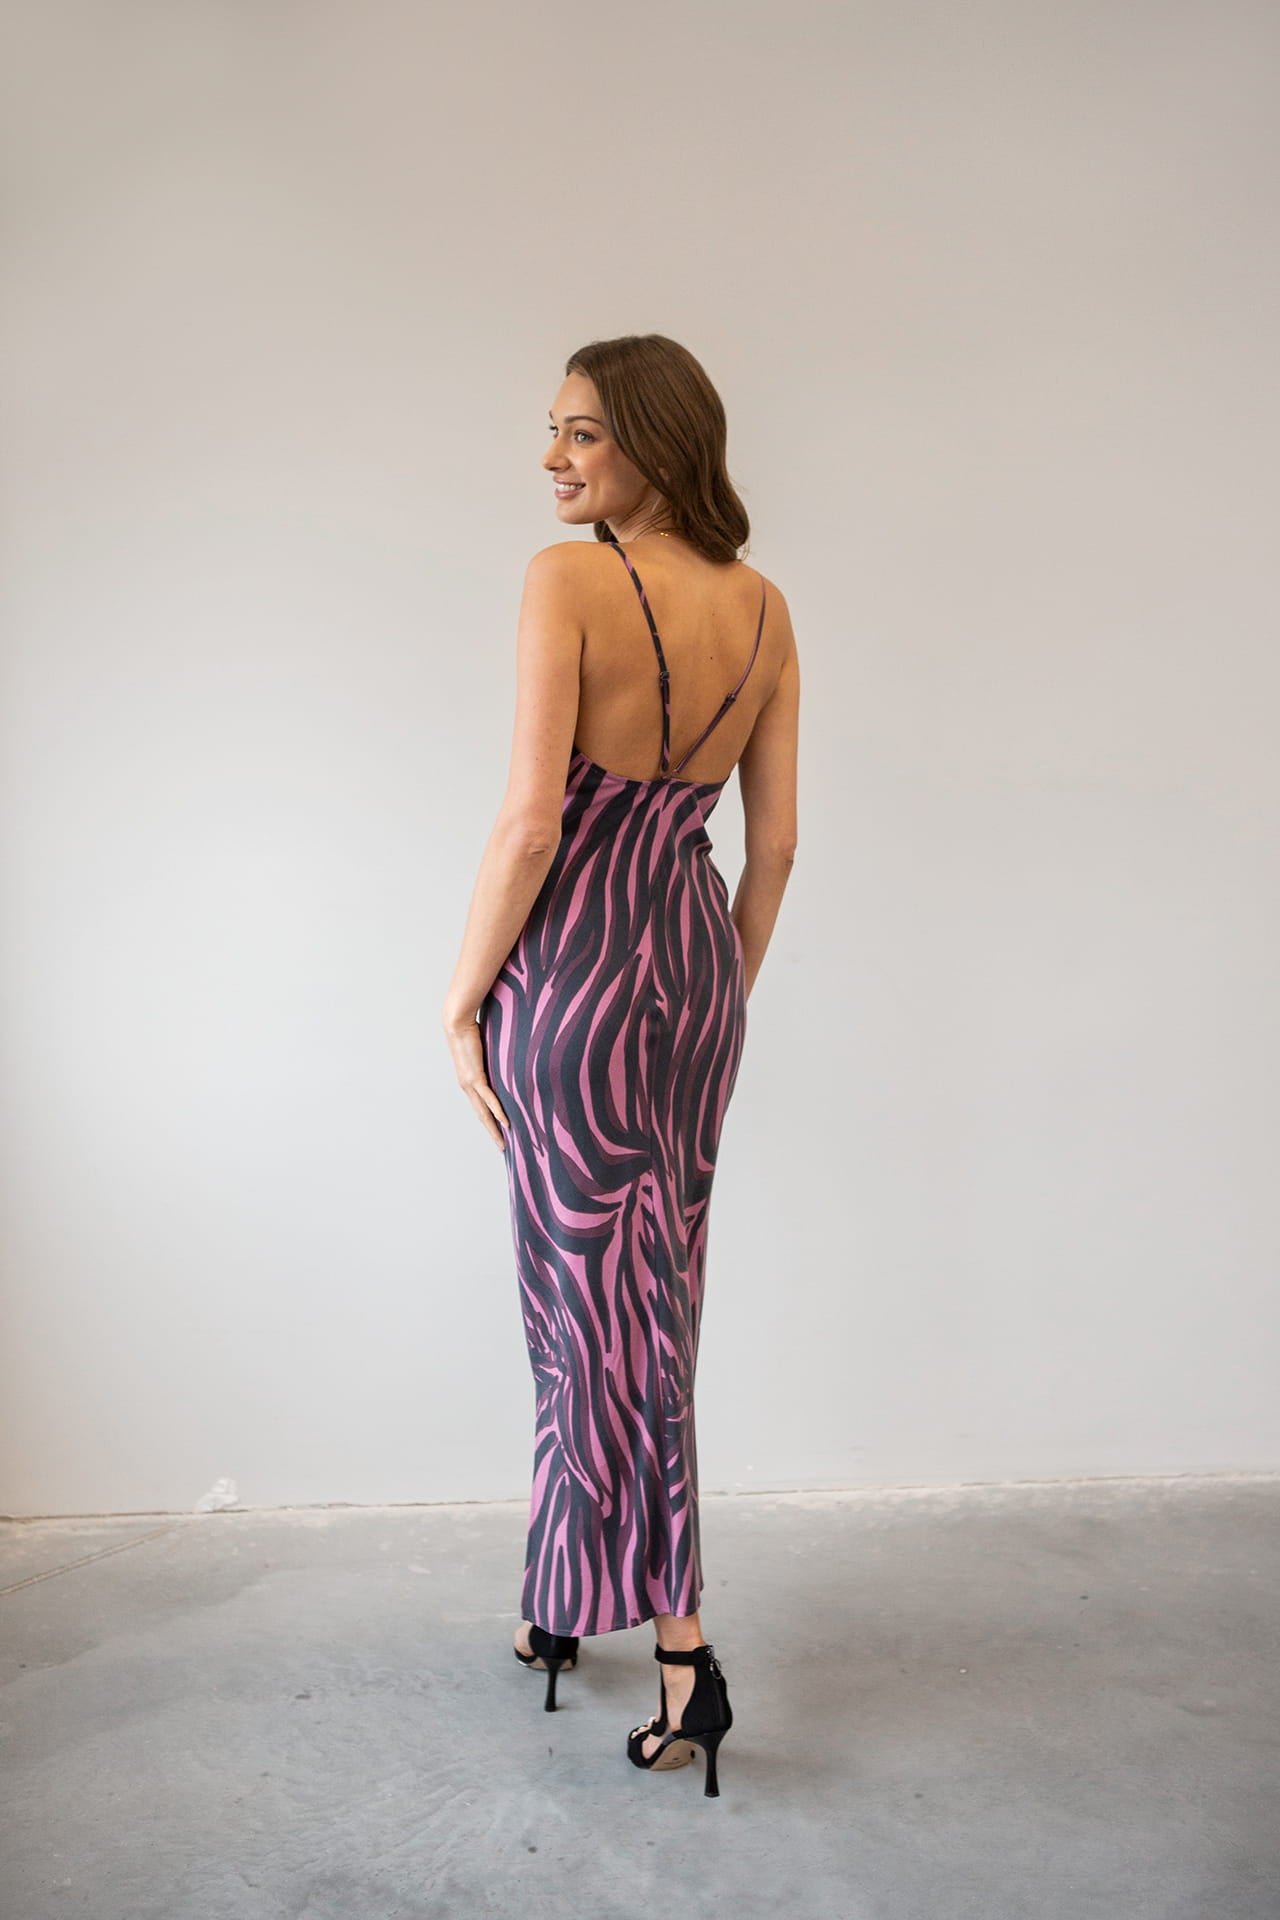 Sukienka Negroni Różowa Zebra